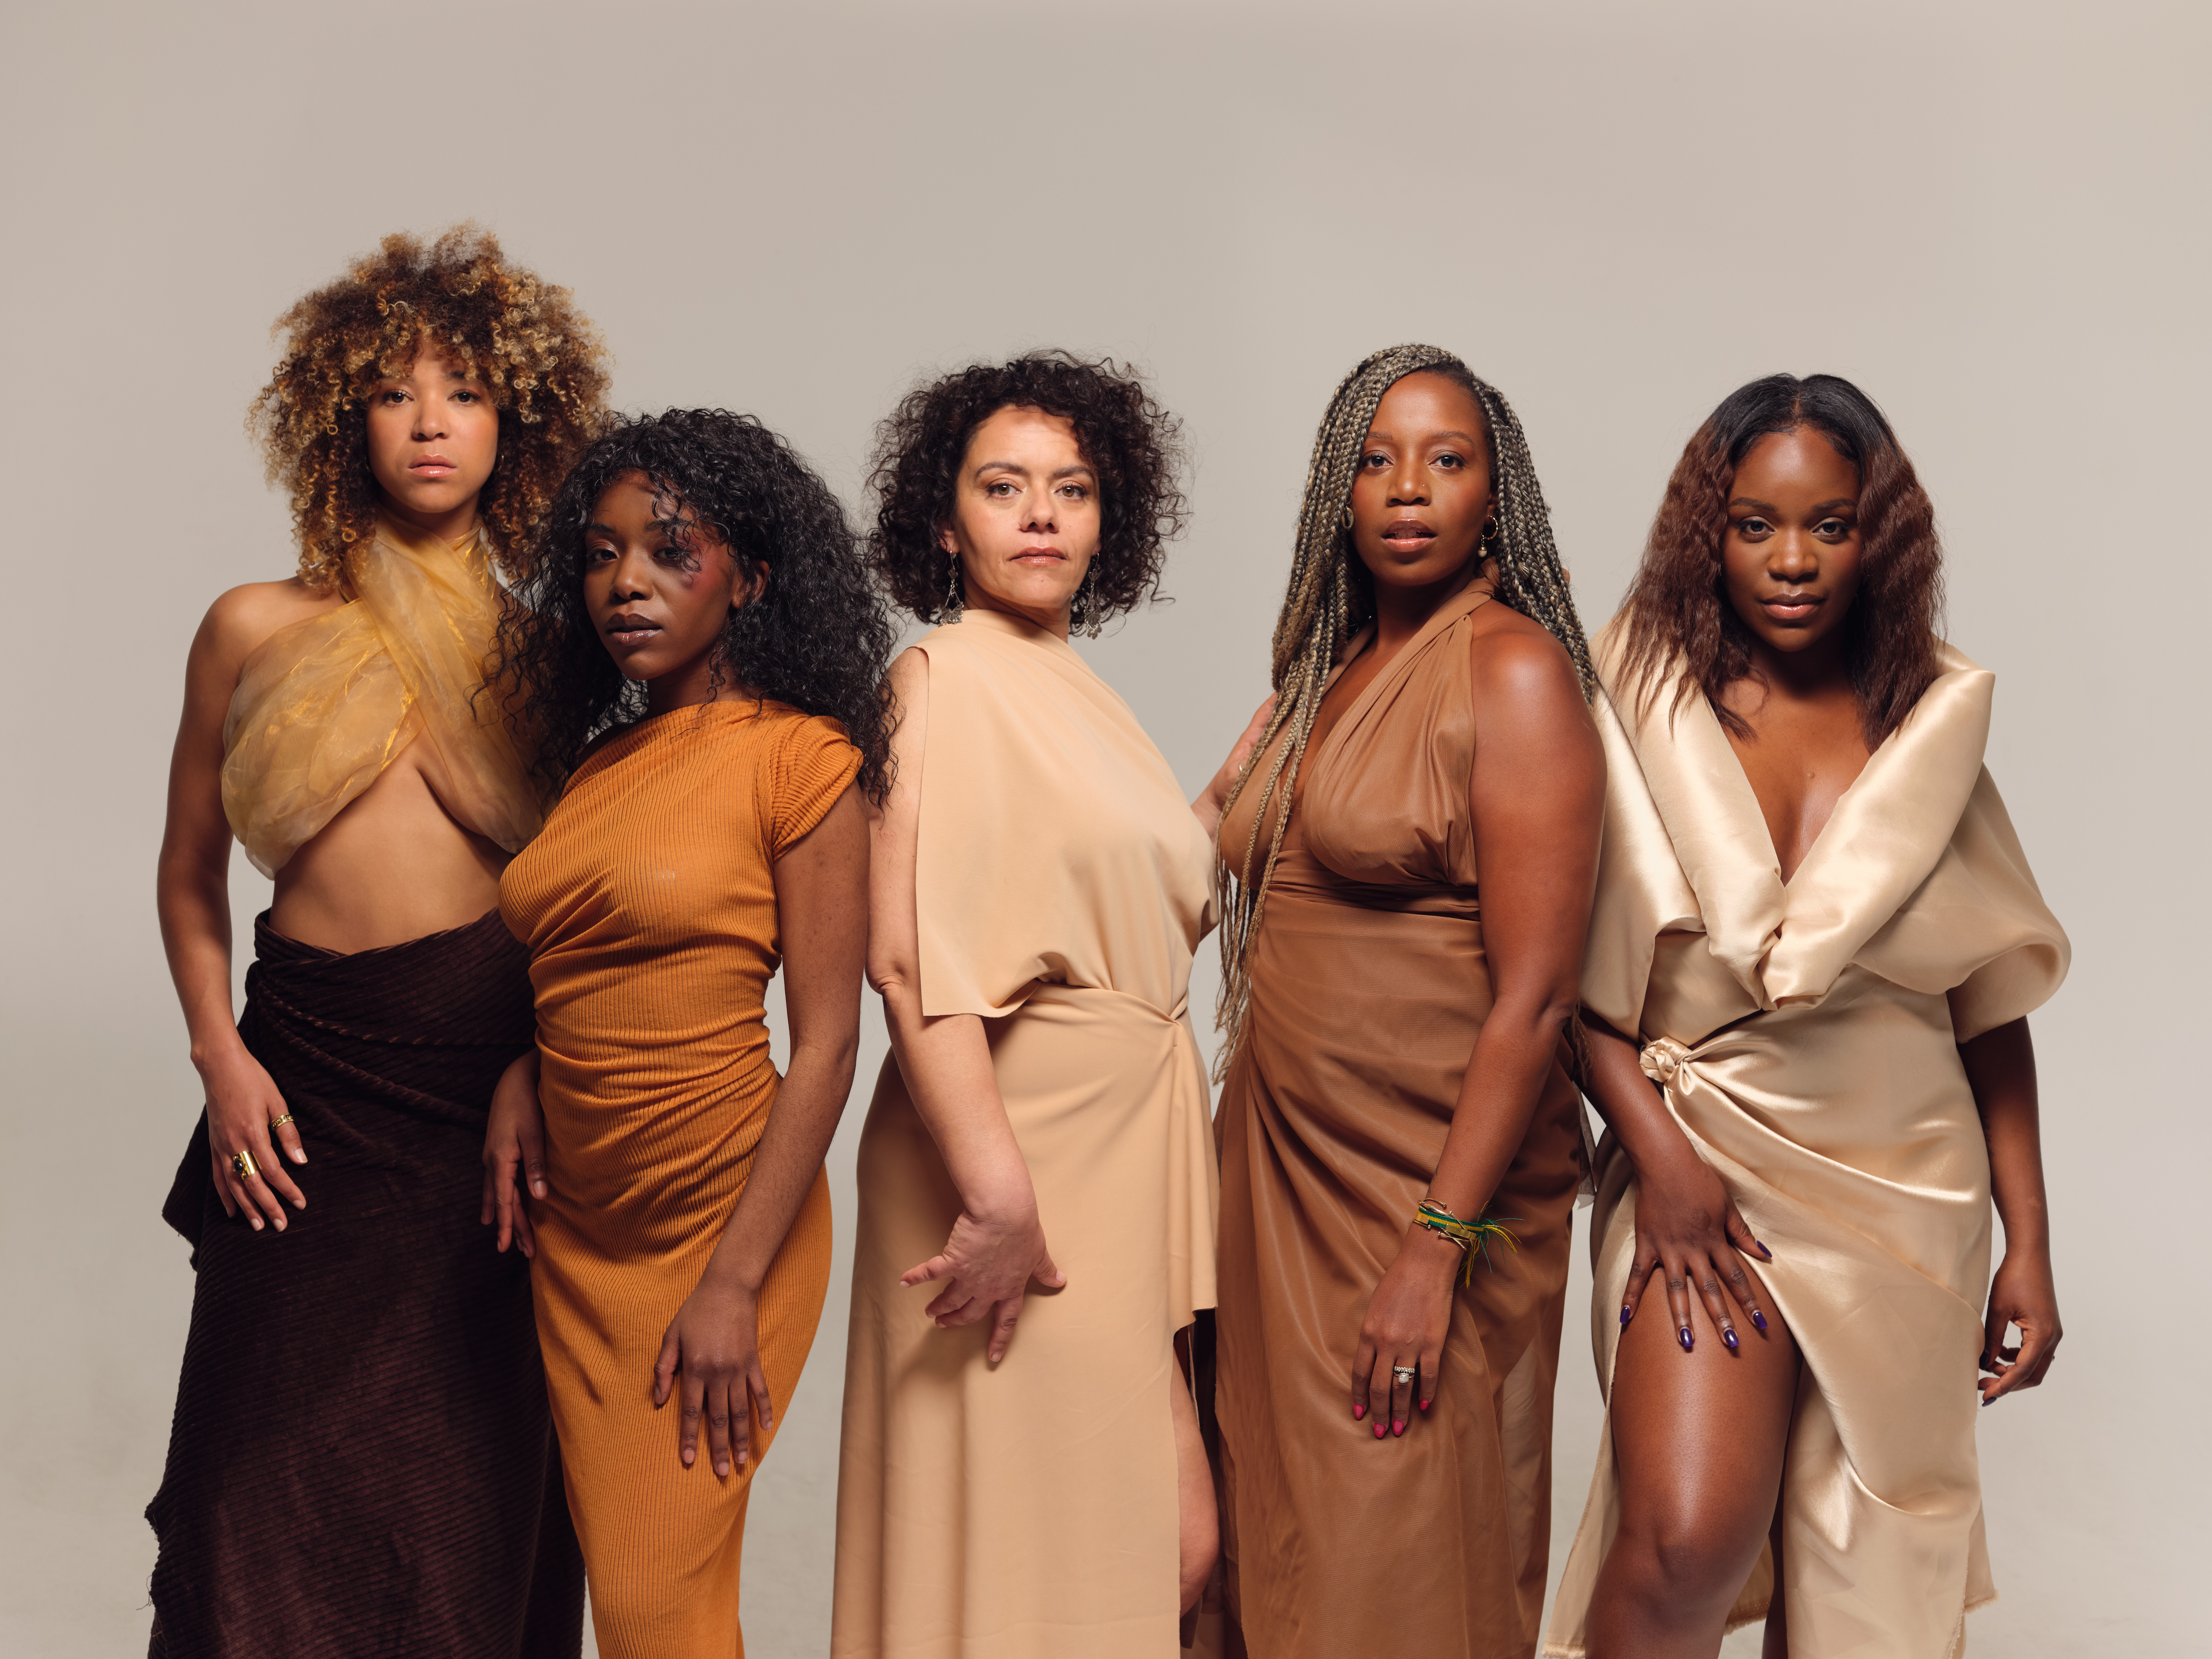 Campagne de sensibilisation et de visibilité pour les actrices afro descendantes 